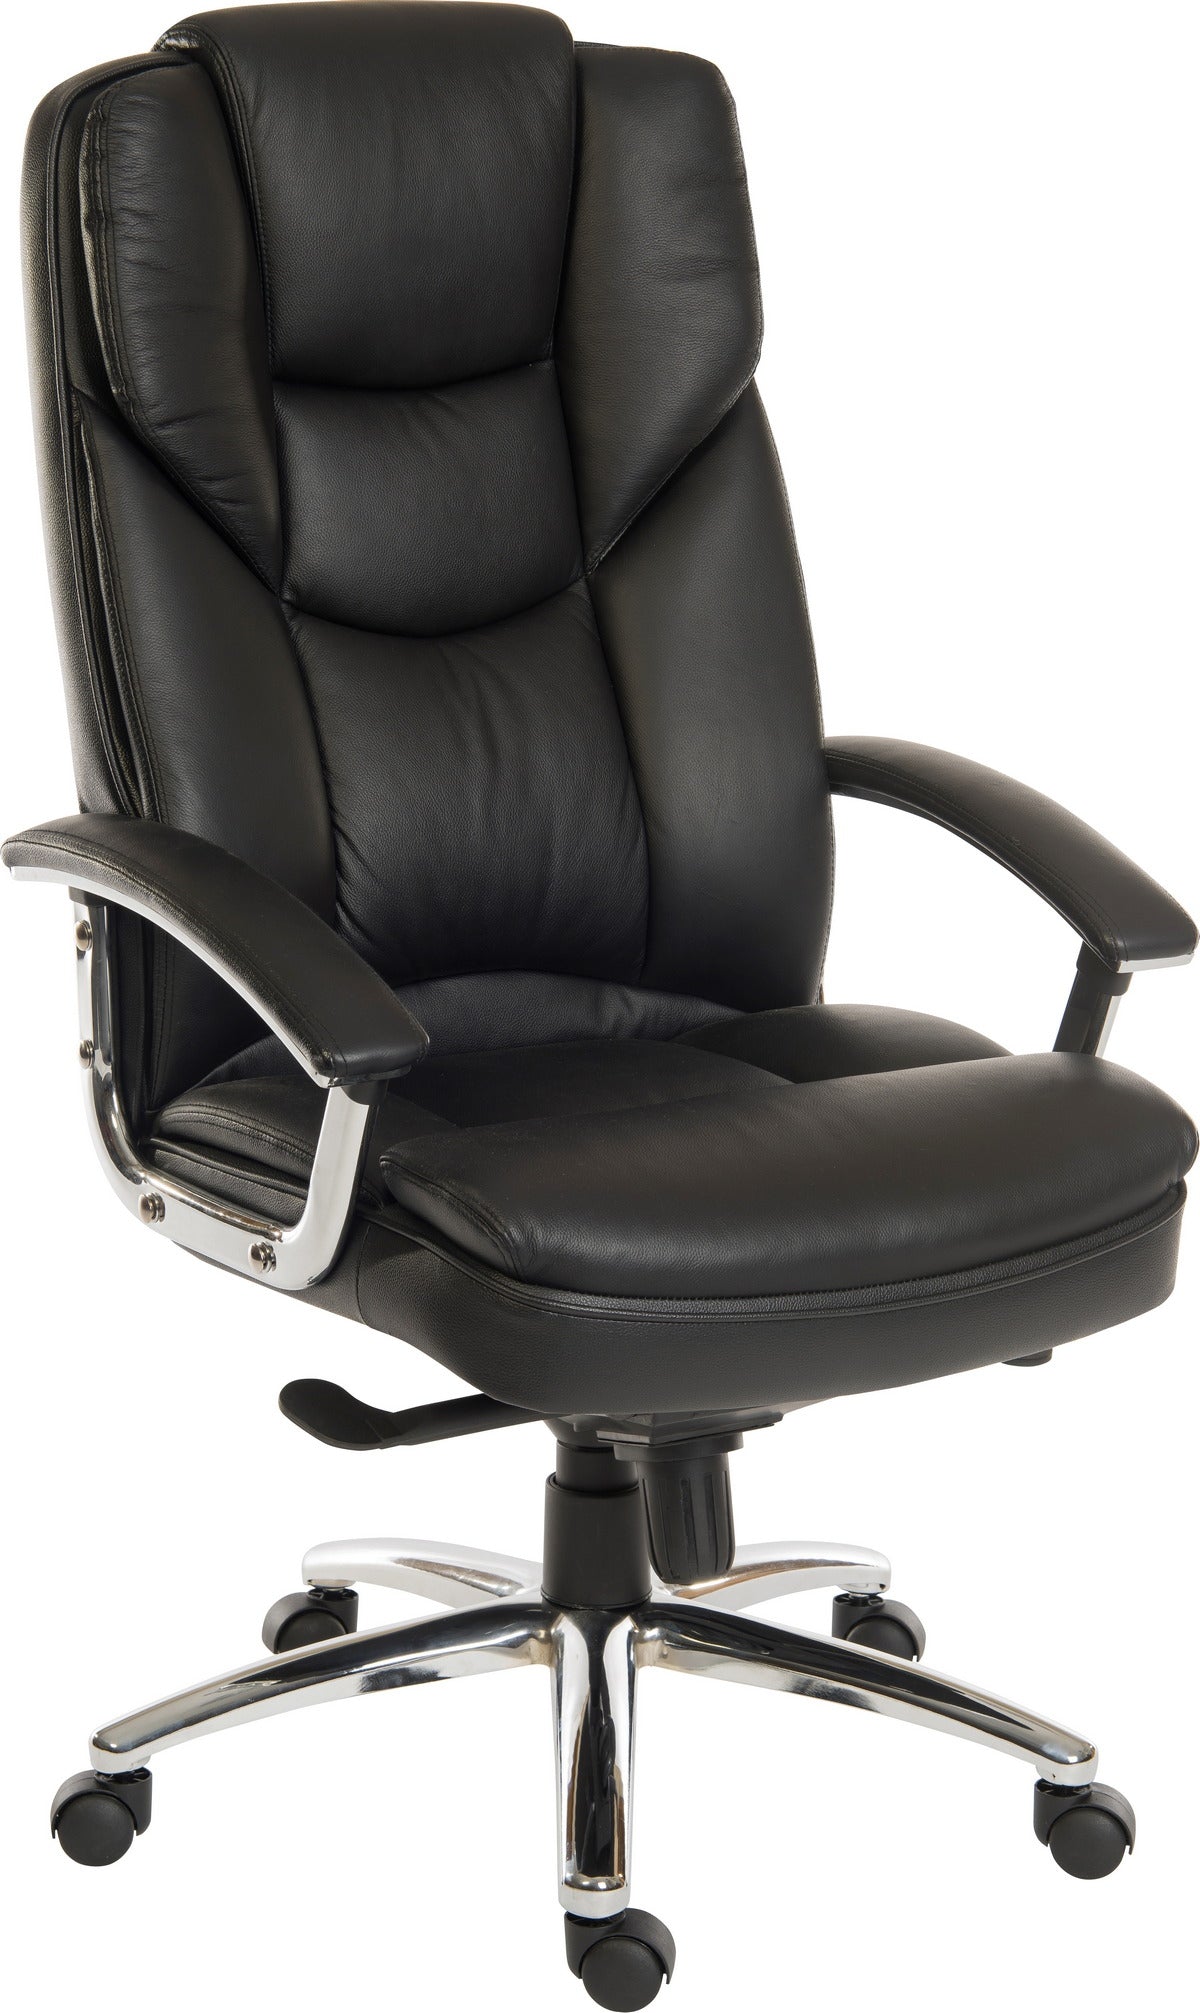 Italian Leather Faced Executive Chair - SKYLINE